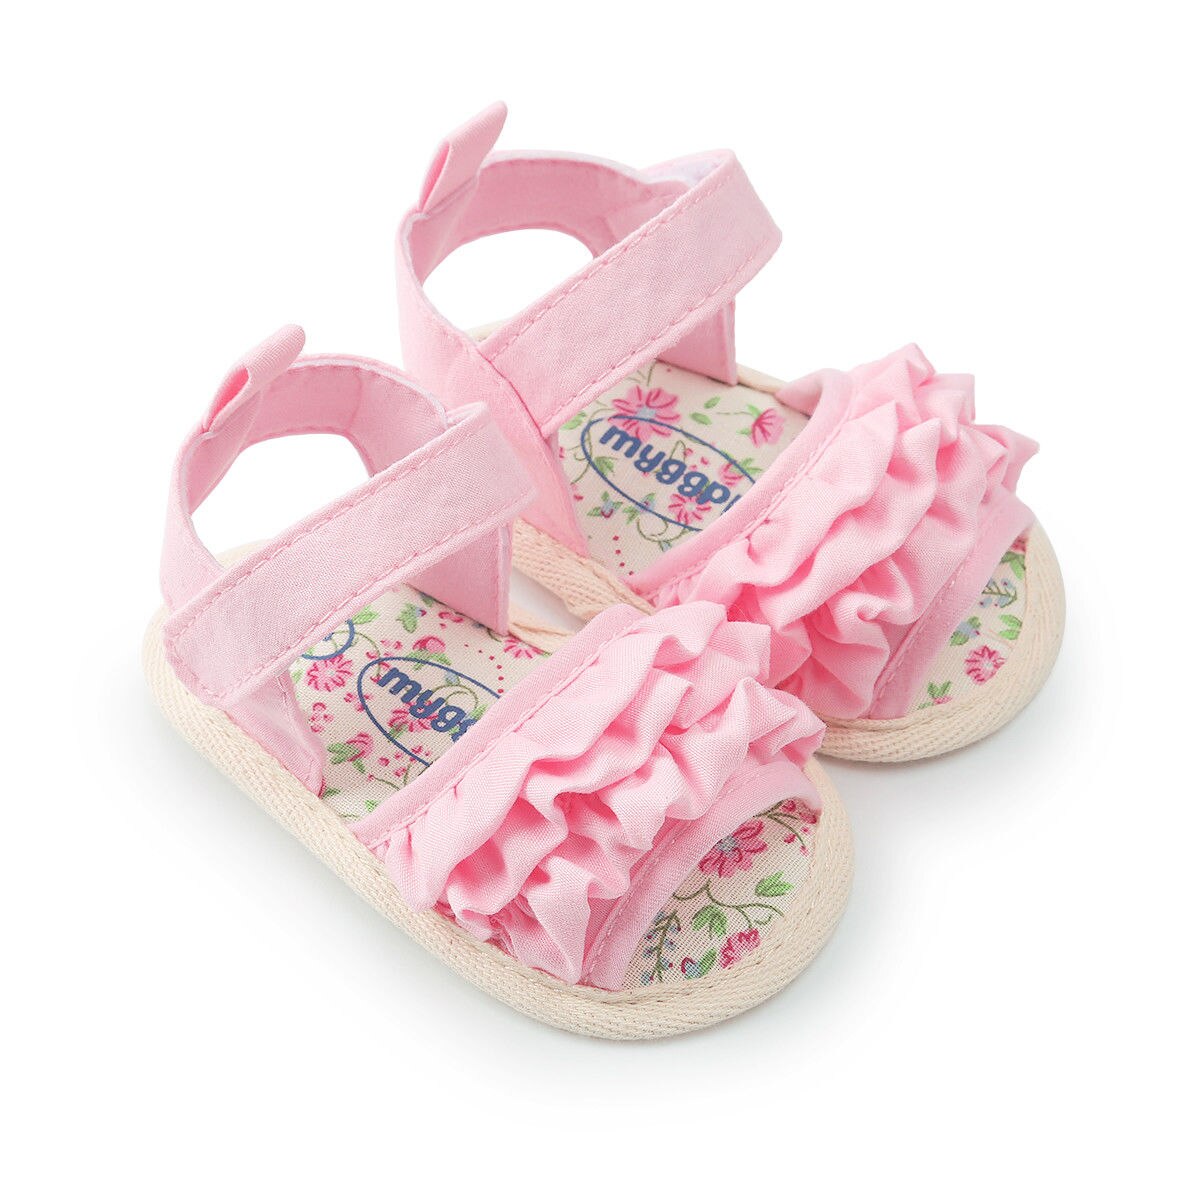 Søde småbørn / baby piger blød sål sommer sandal krybbe sko